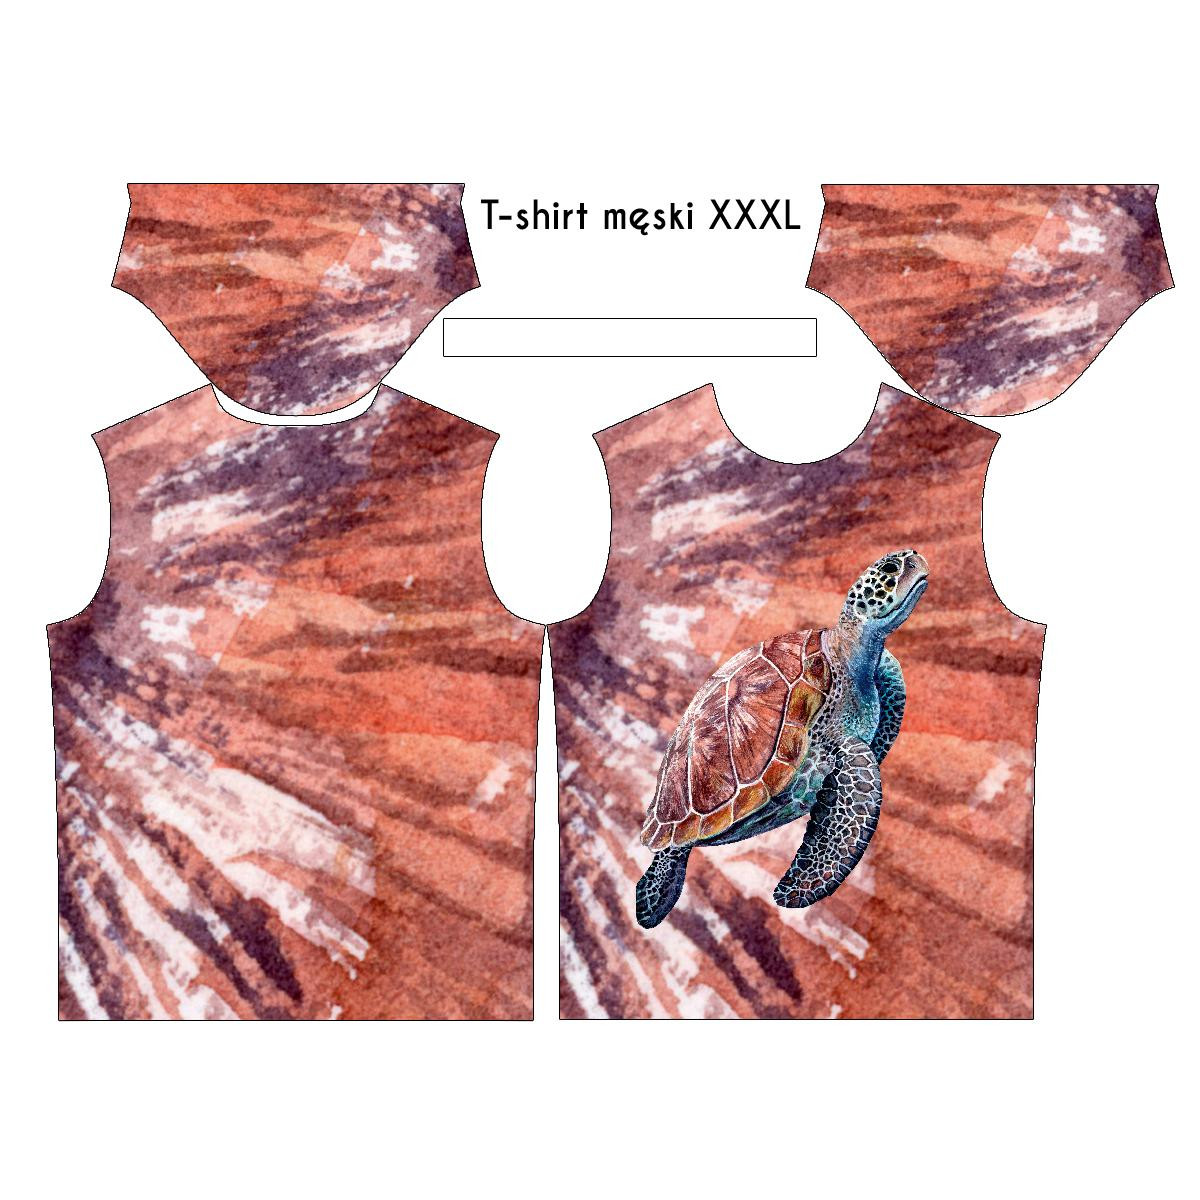 T-SHIRT MĘSKI - ŻÓŁW wz. 2 (Save the ocean)  - single jersey